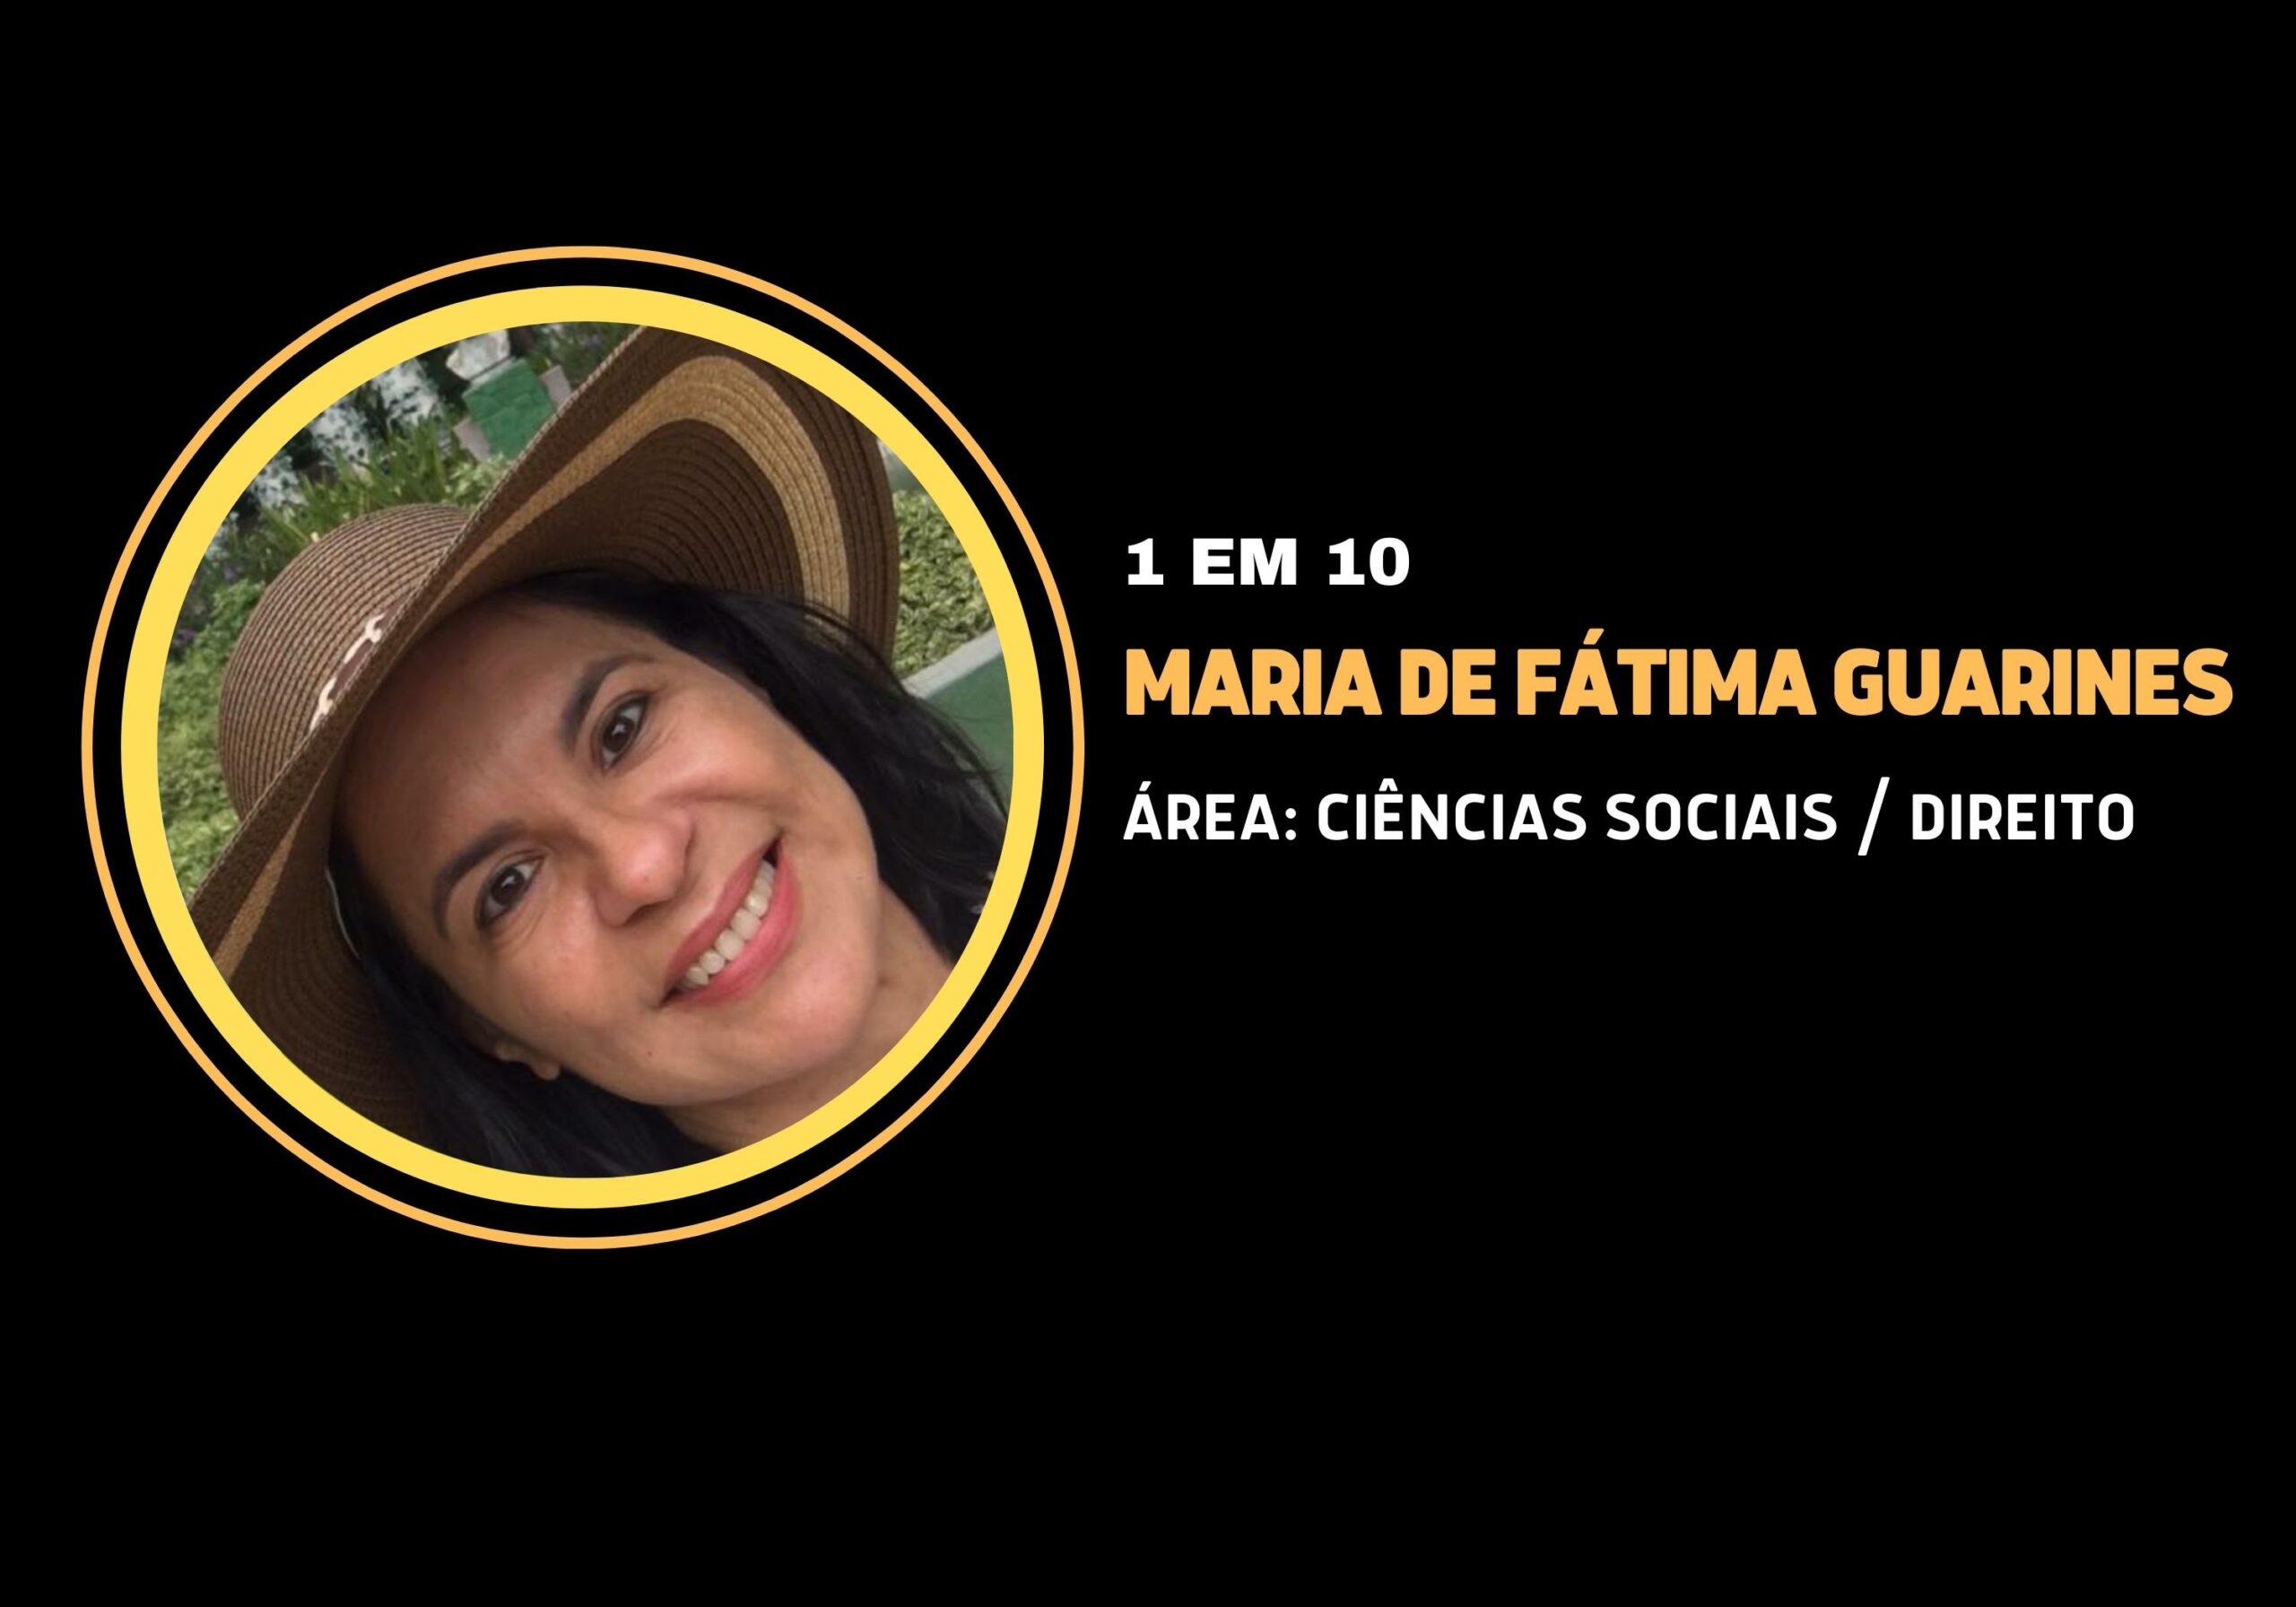 Maria de Fátima Guarines | 1 em 10